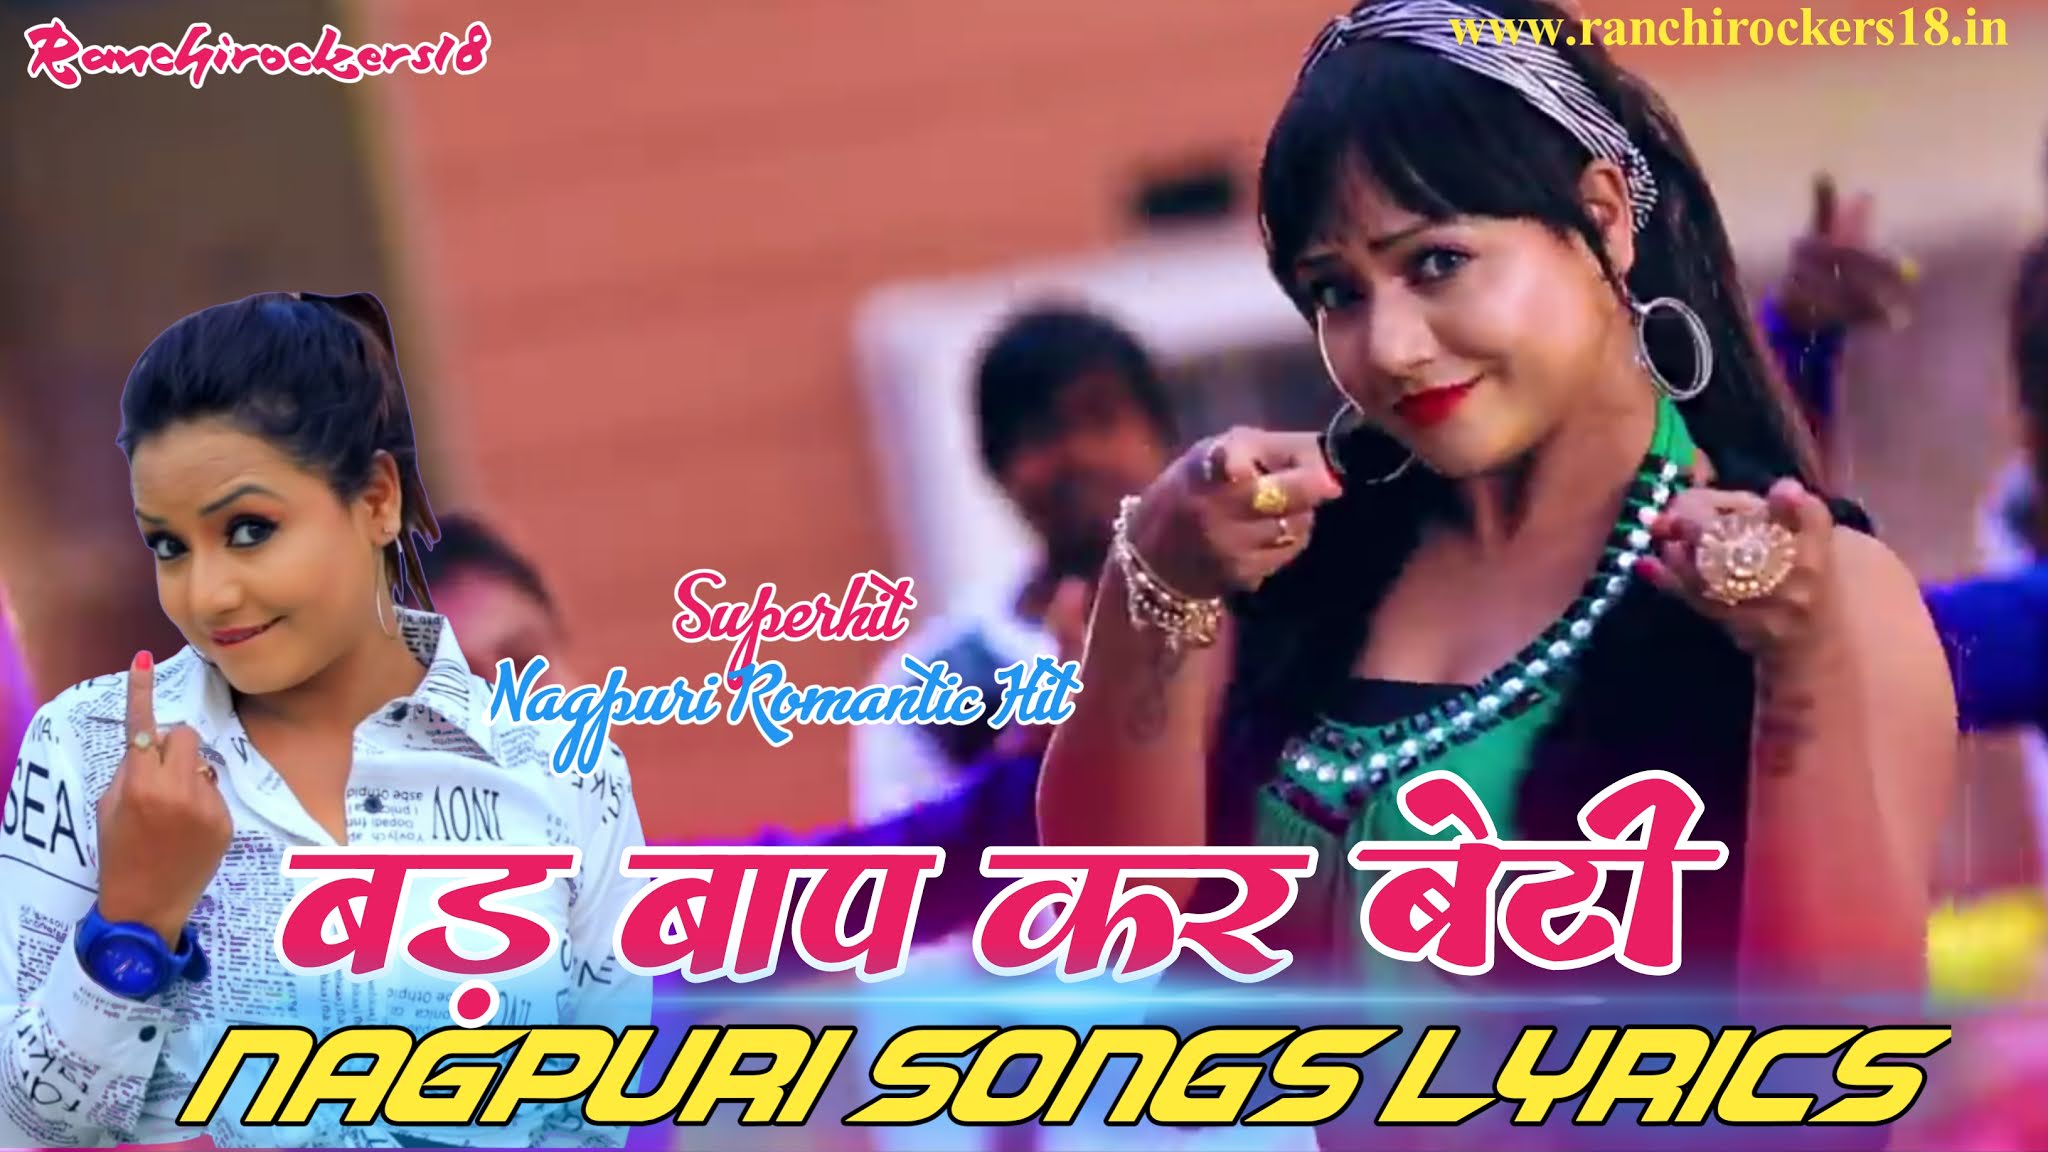 Bad Bap Kar Beti Lyrics, Nagpuri Songs Lyrics, Nagpuri Song Lyrics, Lyrics,